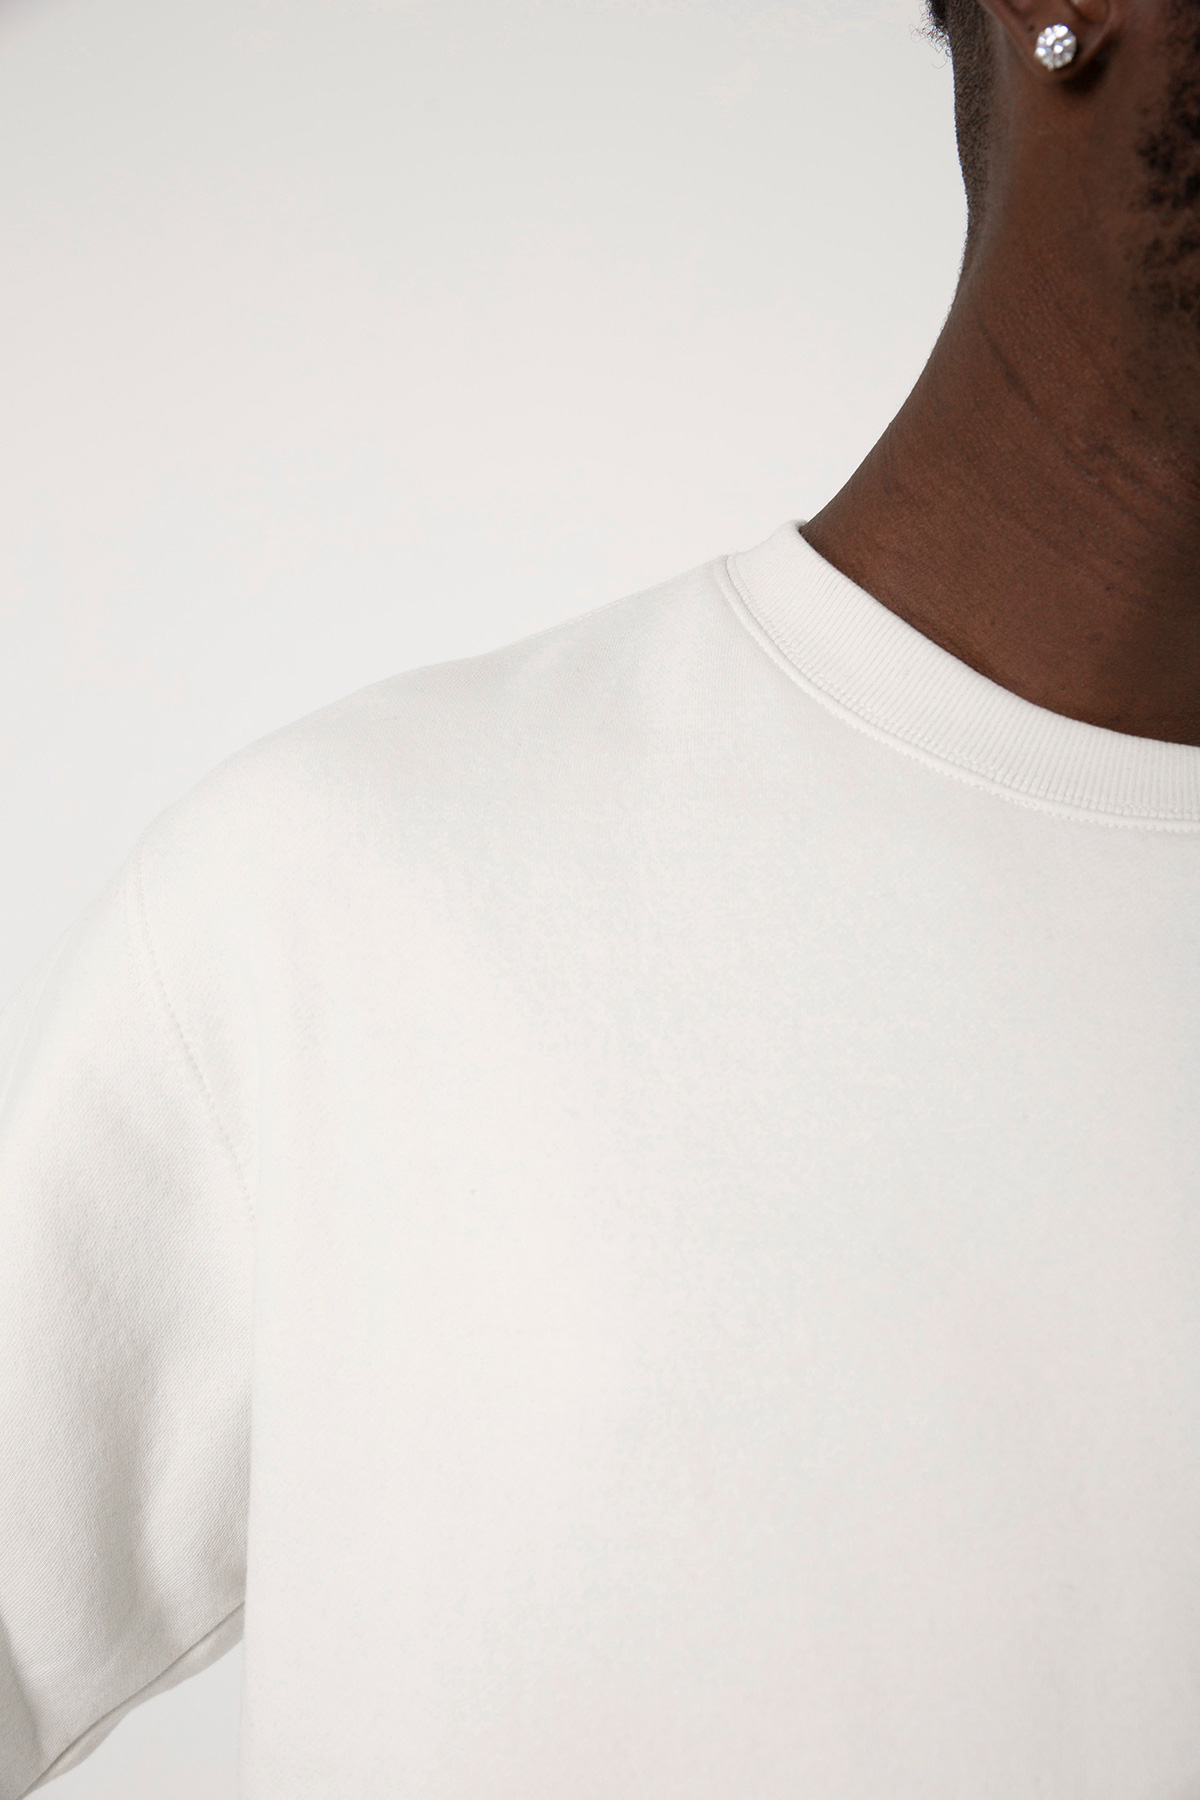 18 Mart Çanakkale Geçilmez Beyaz Erkek 2ip Sweatshirt